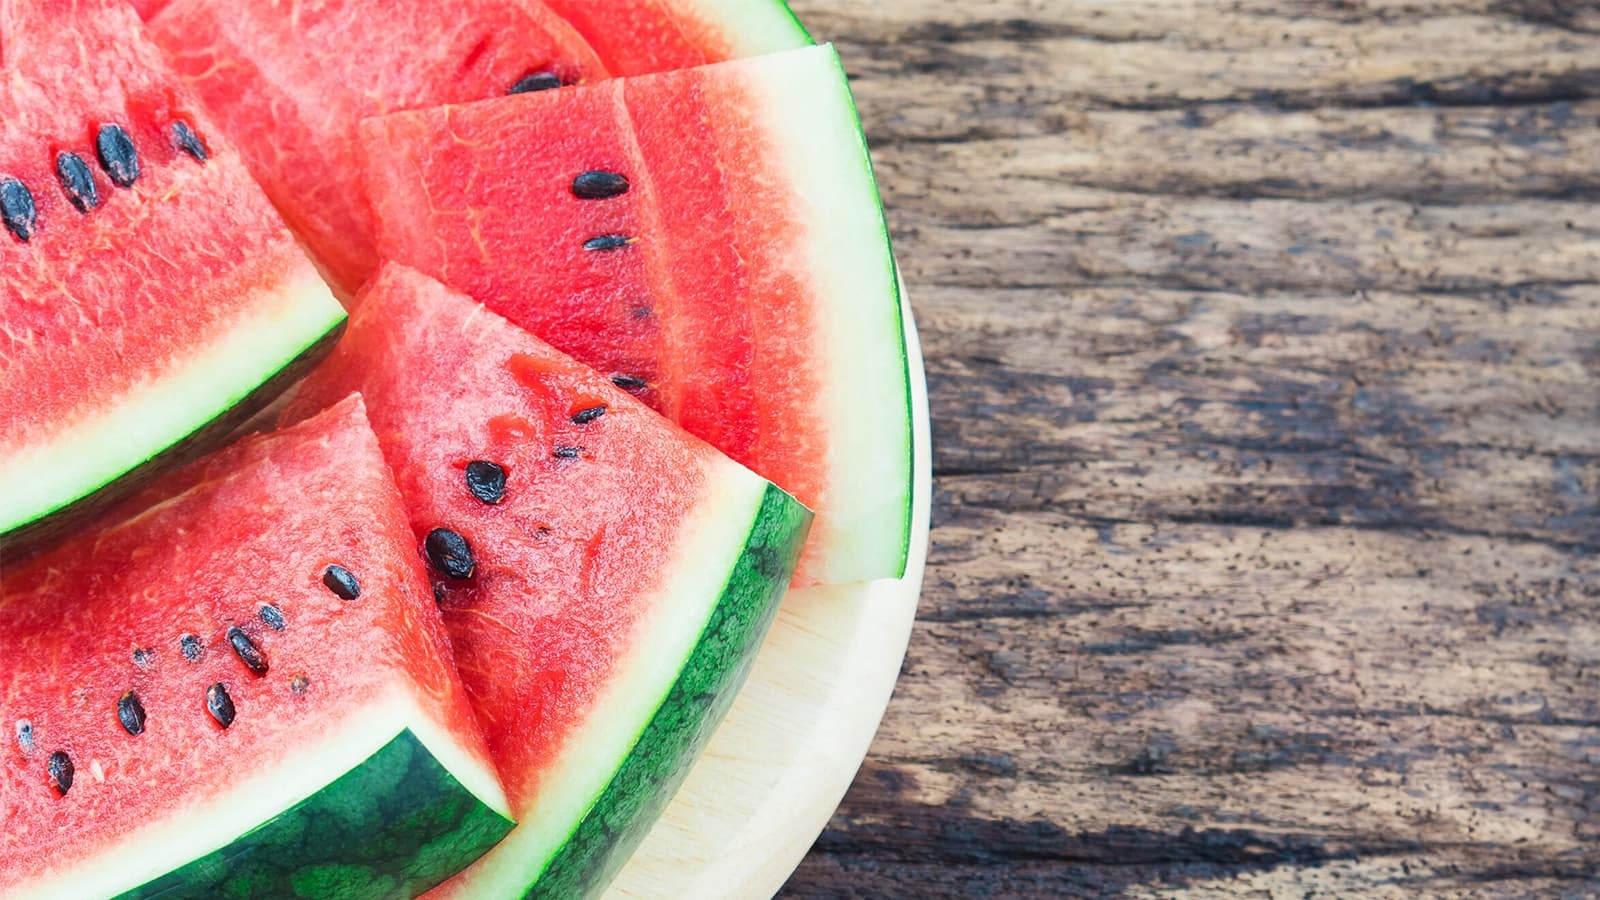 Die Vorteile einer Wassermelone! Bild von einer Wassermelone, die in Scheiben geschnitten wurde.